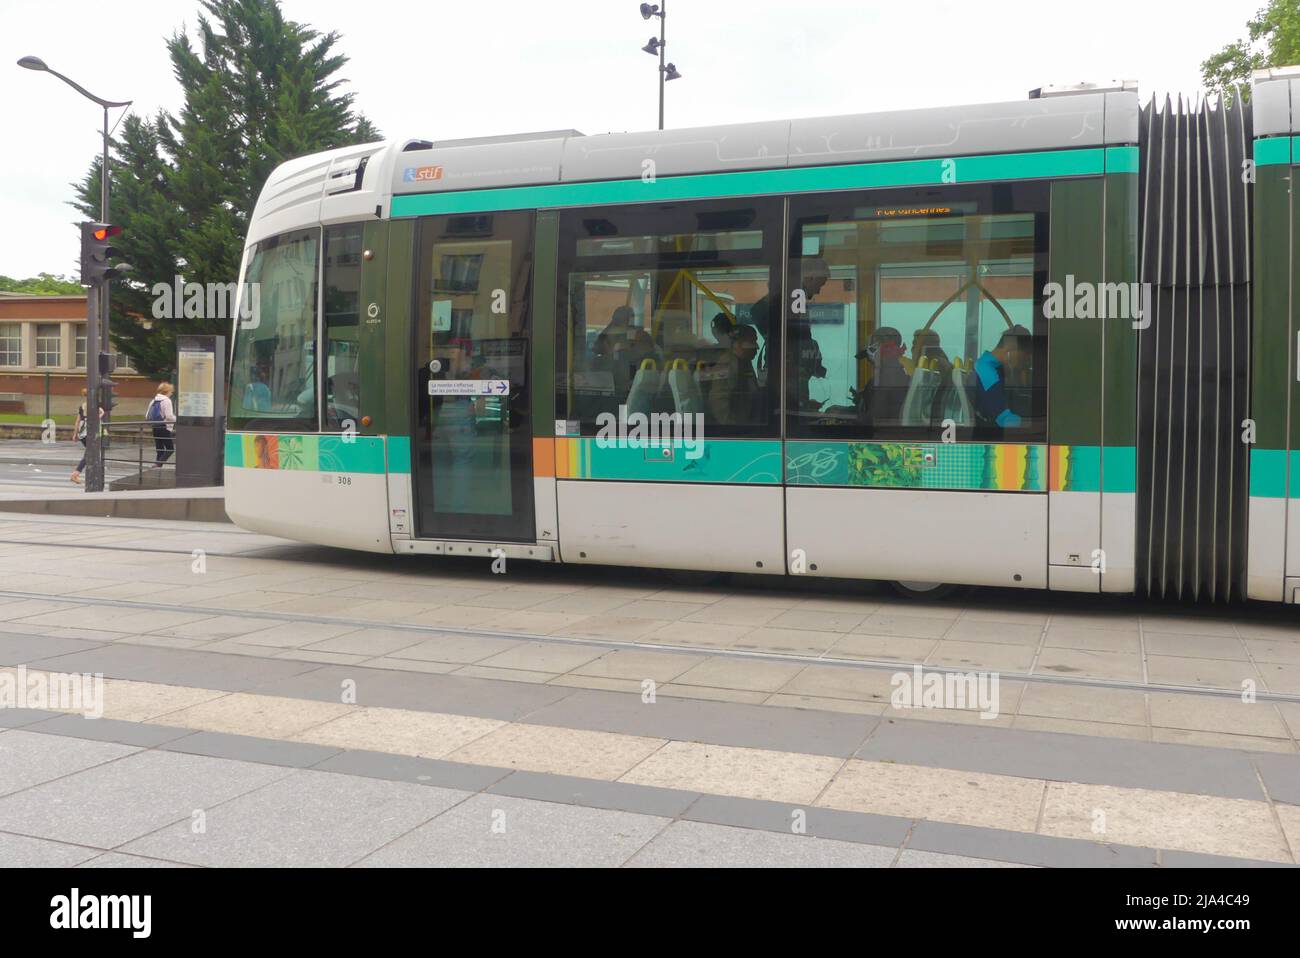 Paris, France. Mai 22. 2022. Passage en tramway à la gare de Bercy. Transports publics et écologiques. Banque D'Images